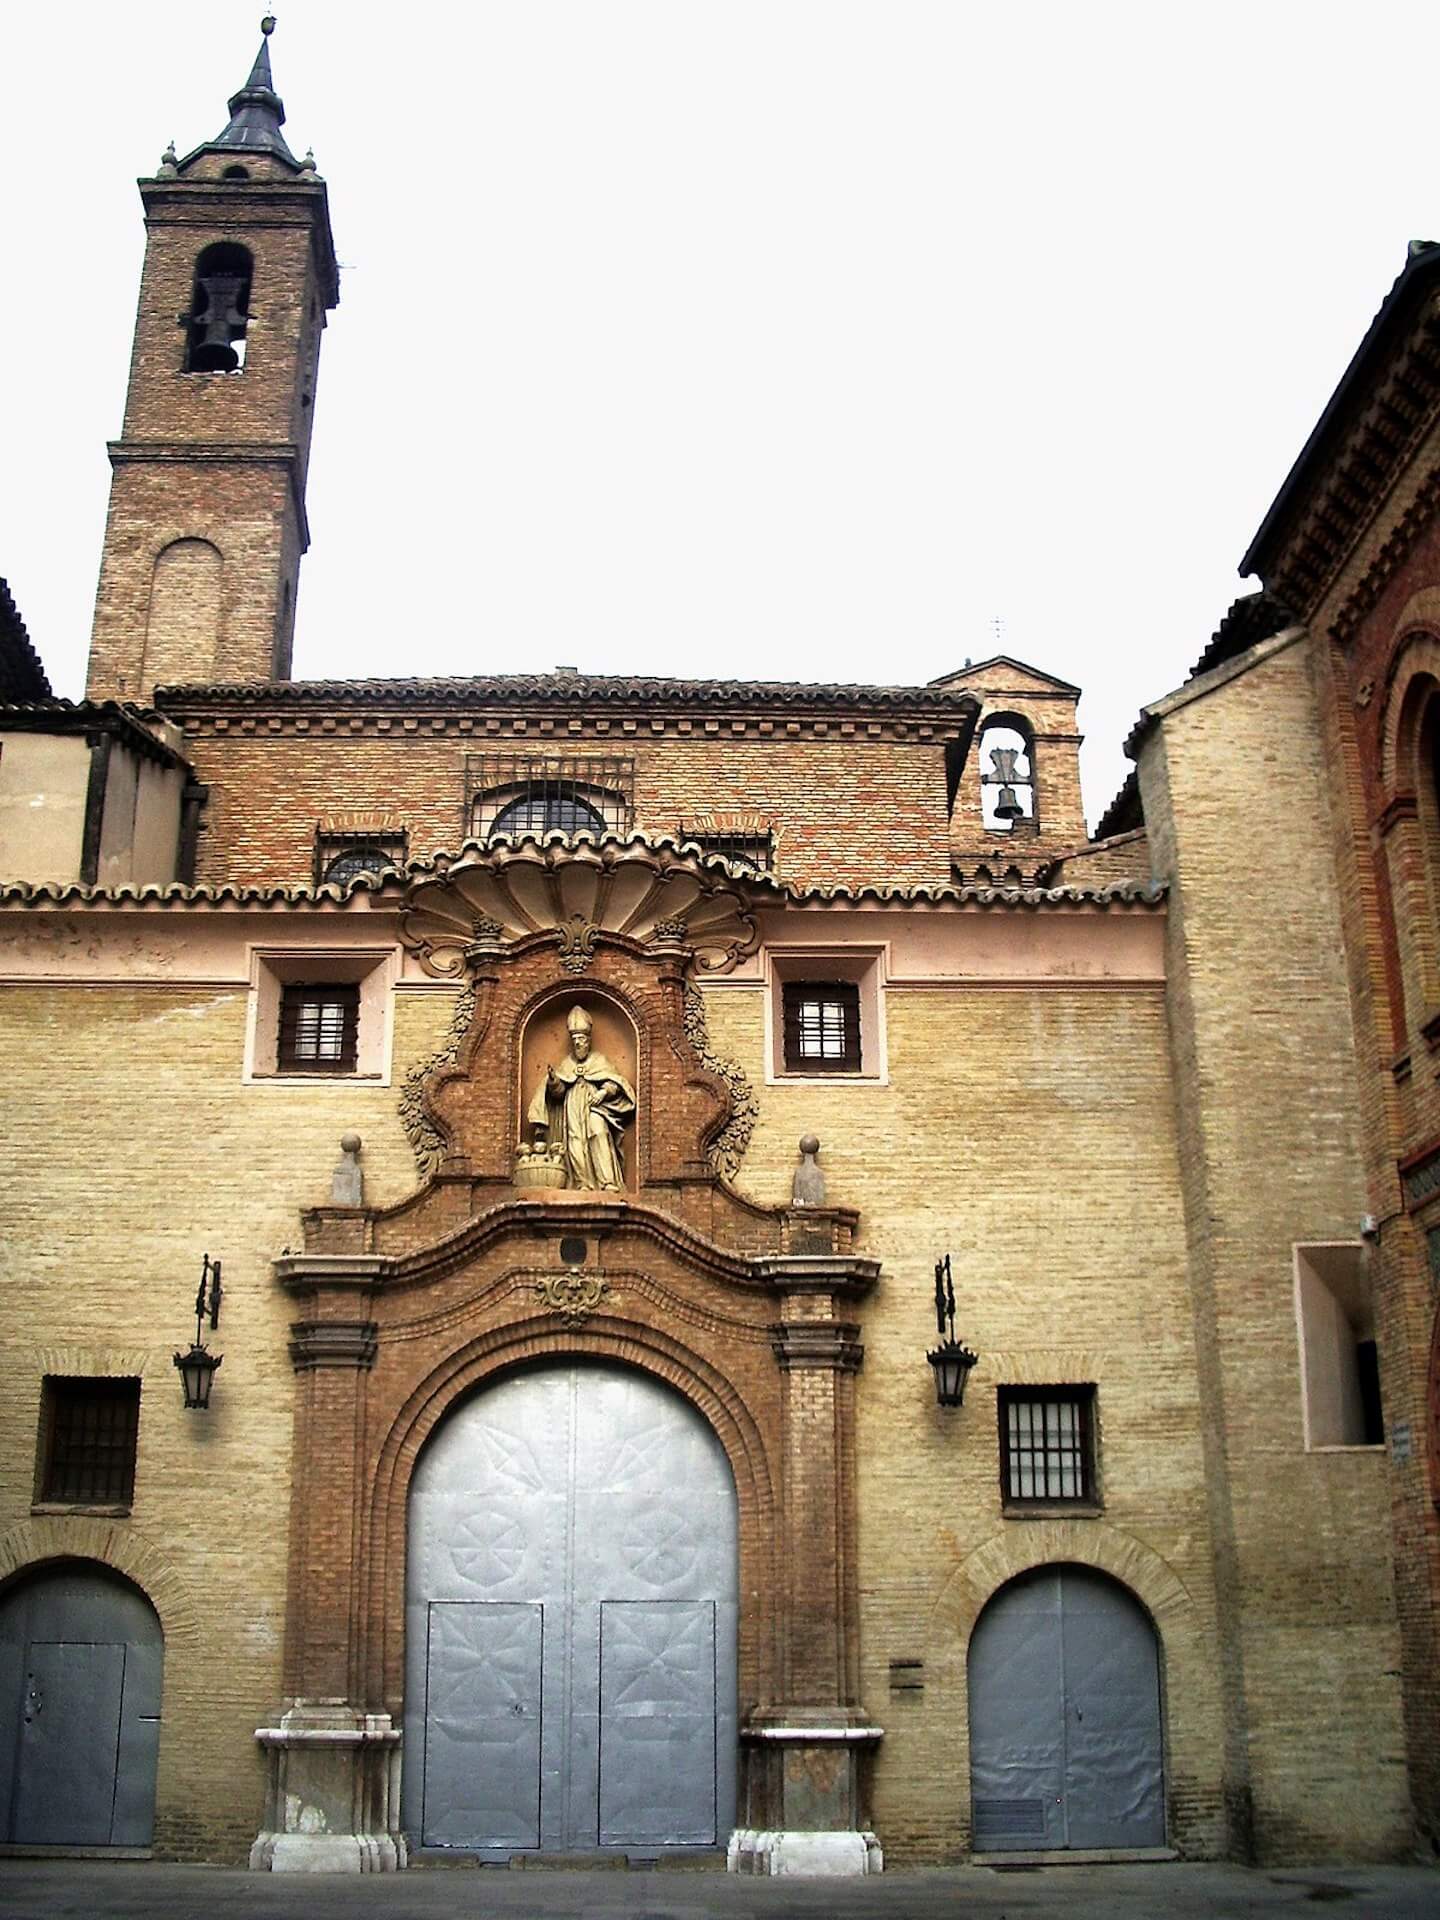 Monasterio del Santo Sepulcro. Iglesia de San Nicolás - Zaragoza